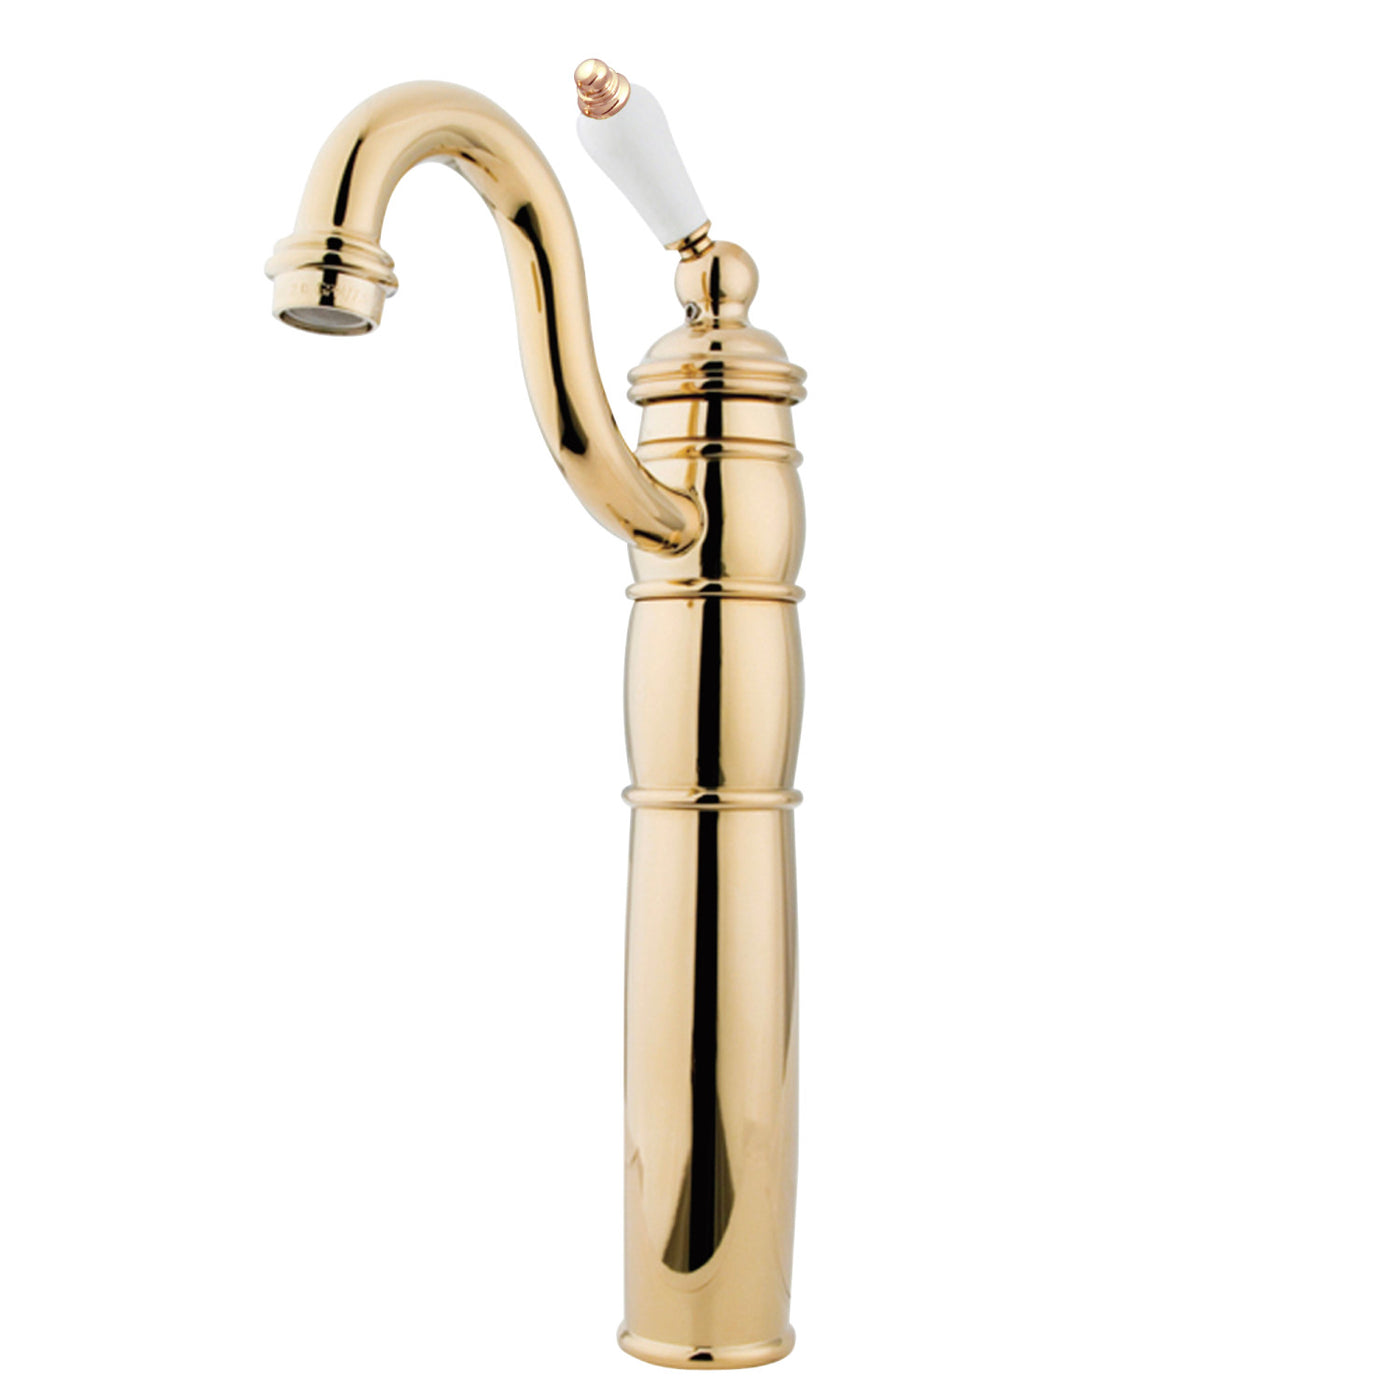 Elements of Design EB1422PL Vessel Sink Faucet, Polished Brass